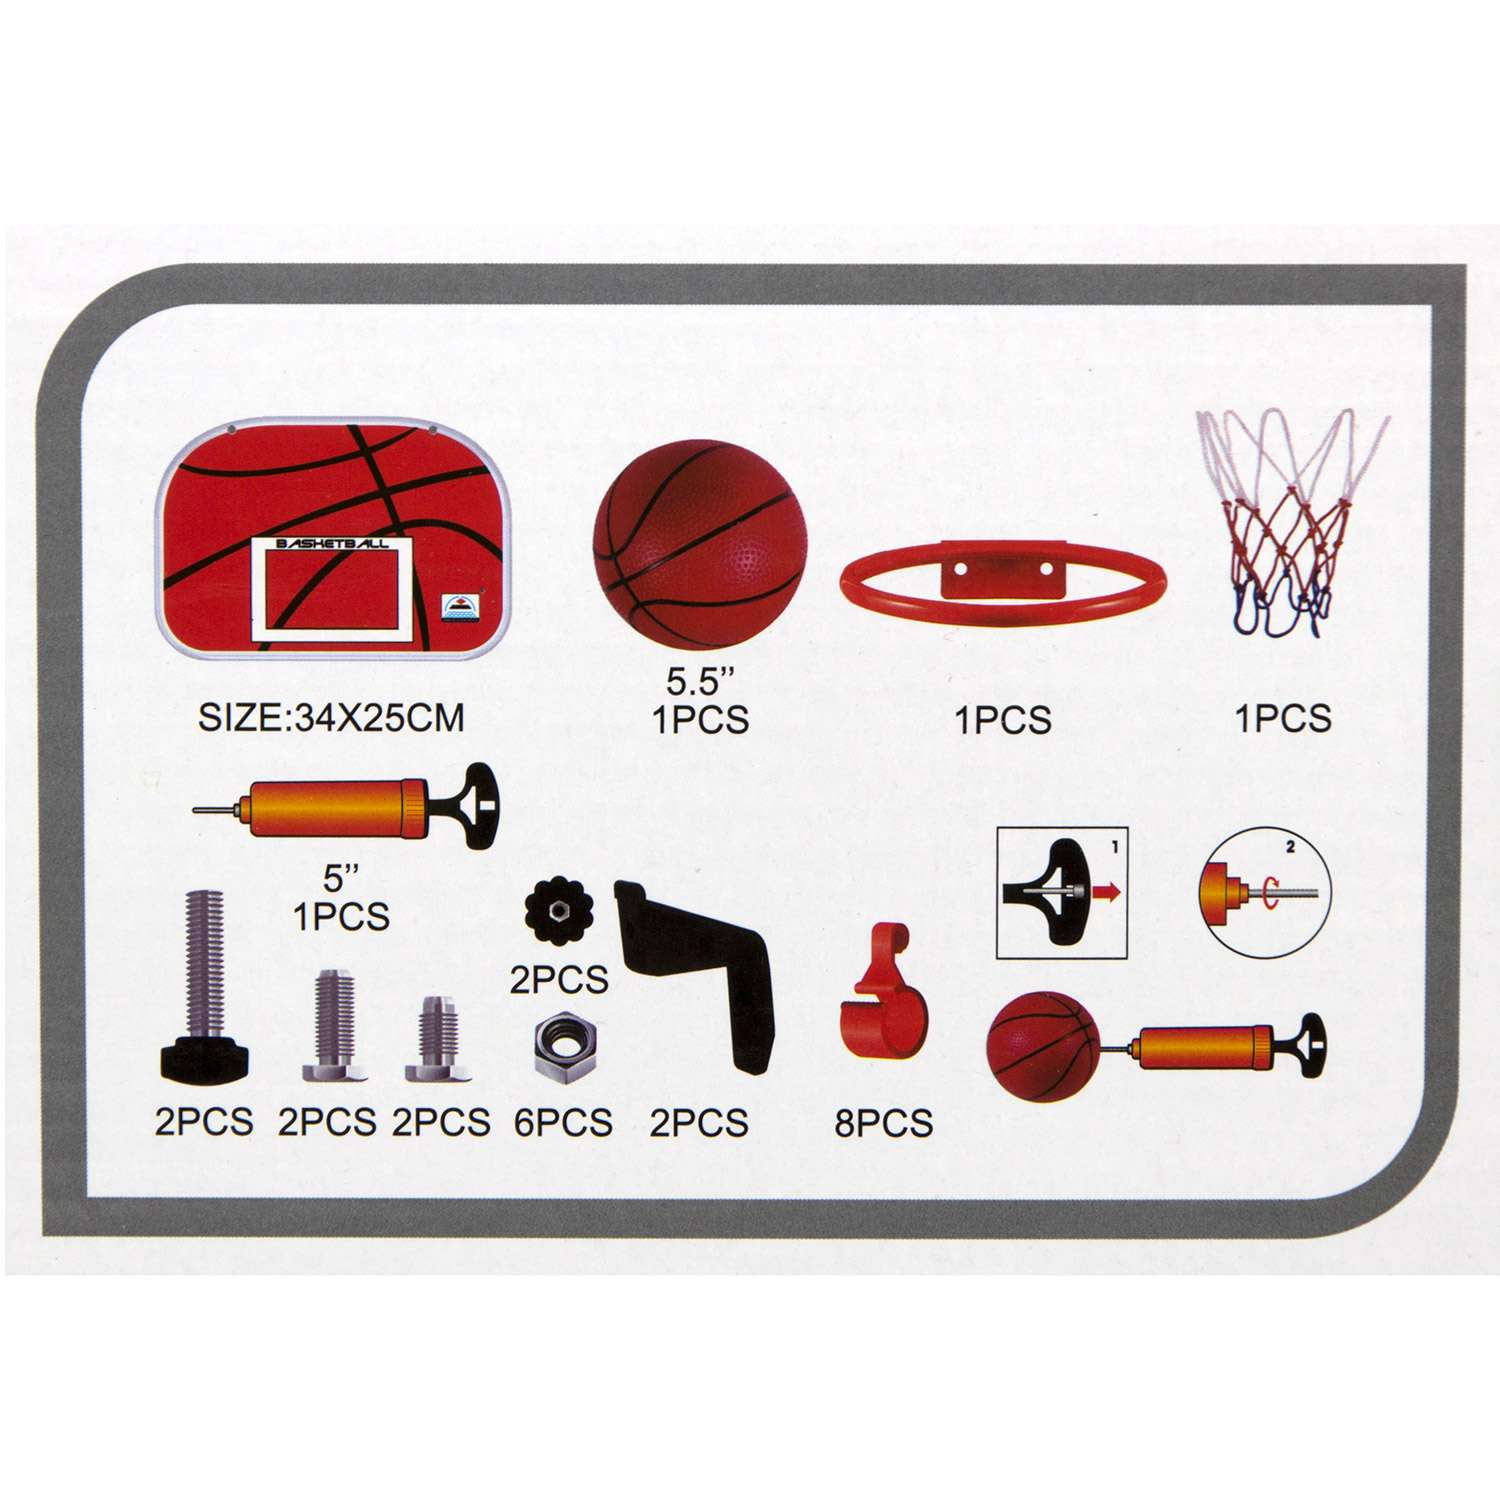 Набор для игры в баскетбол S+S корзина со щитом мяч насос - фото 3